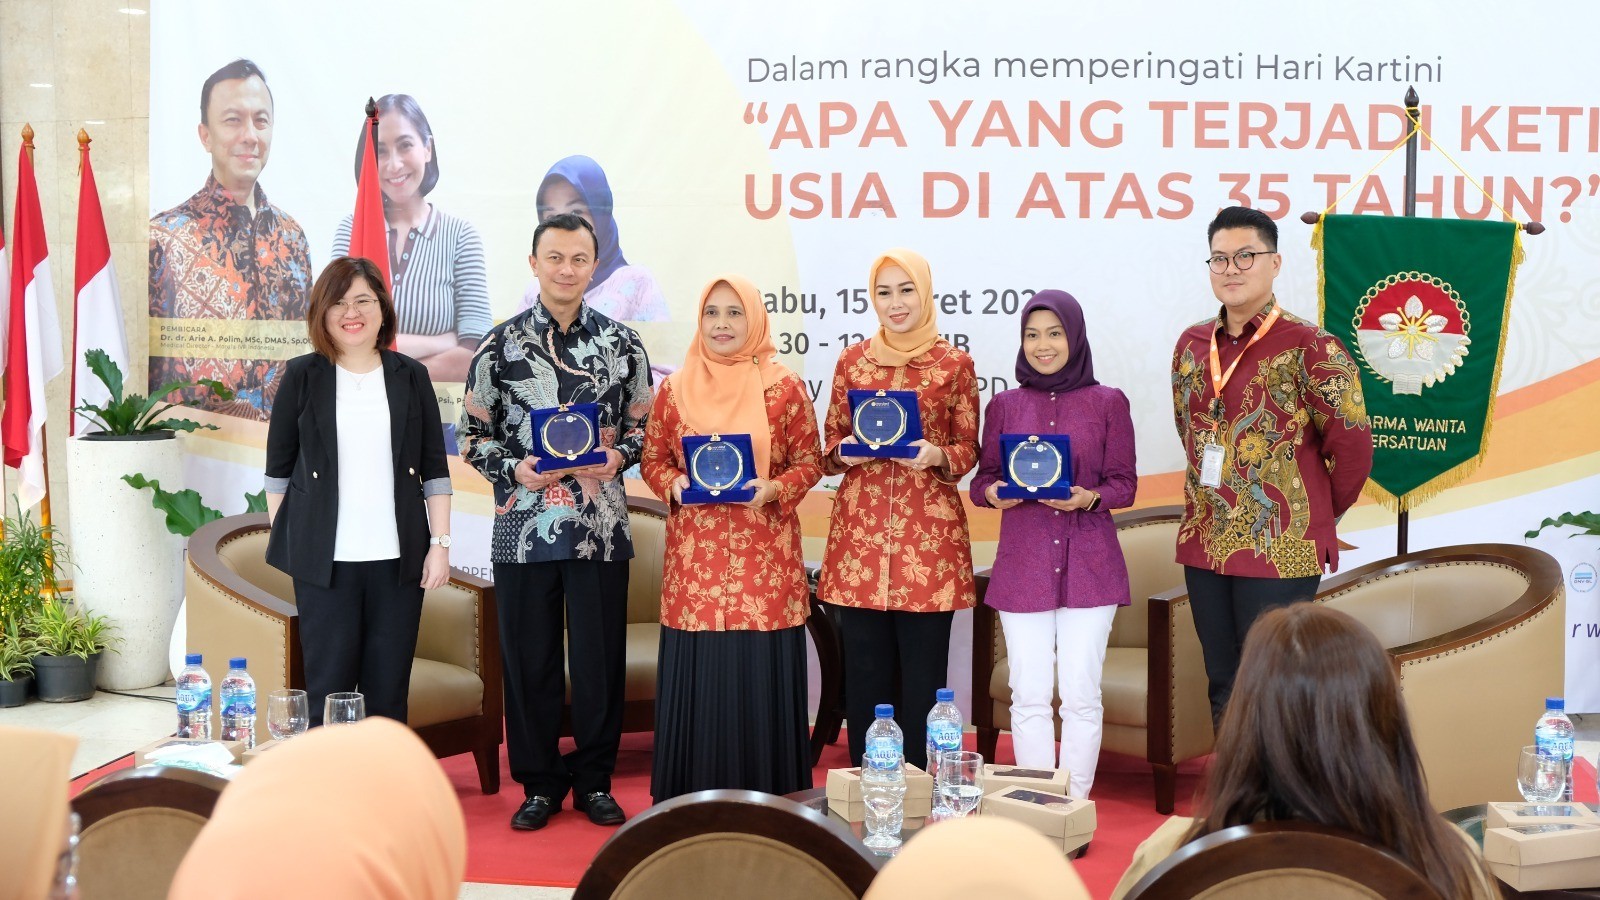 Morula IVF Indonesia Bersama Dharma Wanita Persatuan Setjen DPD RI Gelar Seminar Edukasi Kesehatan Reproduksi Perempuan